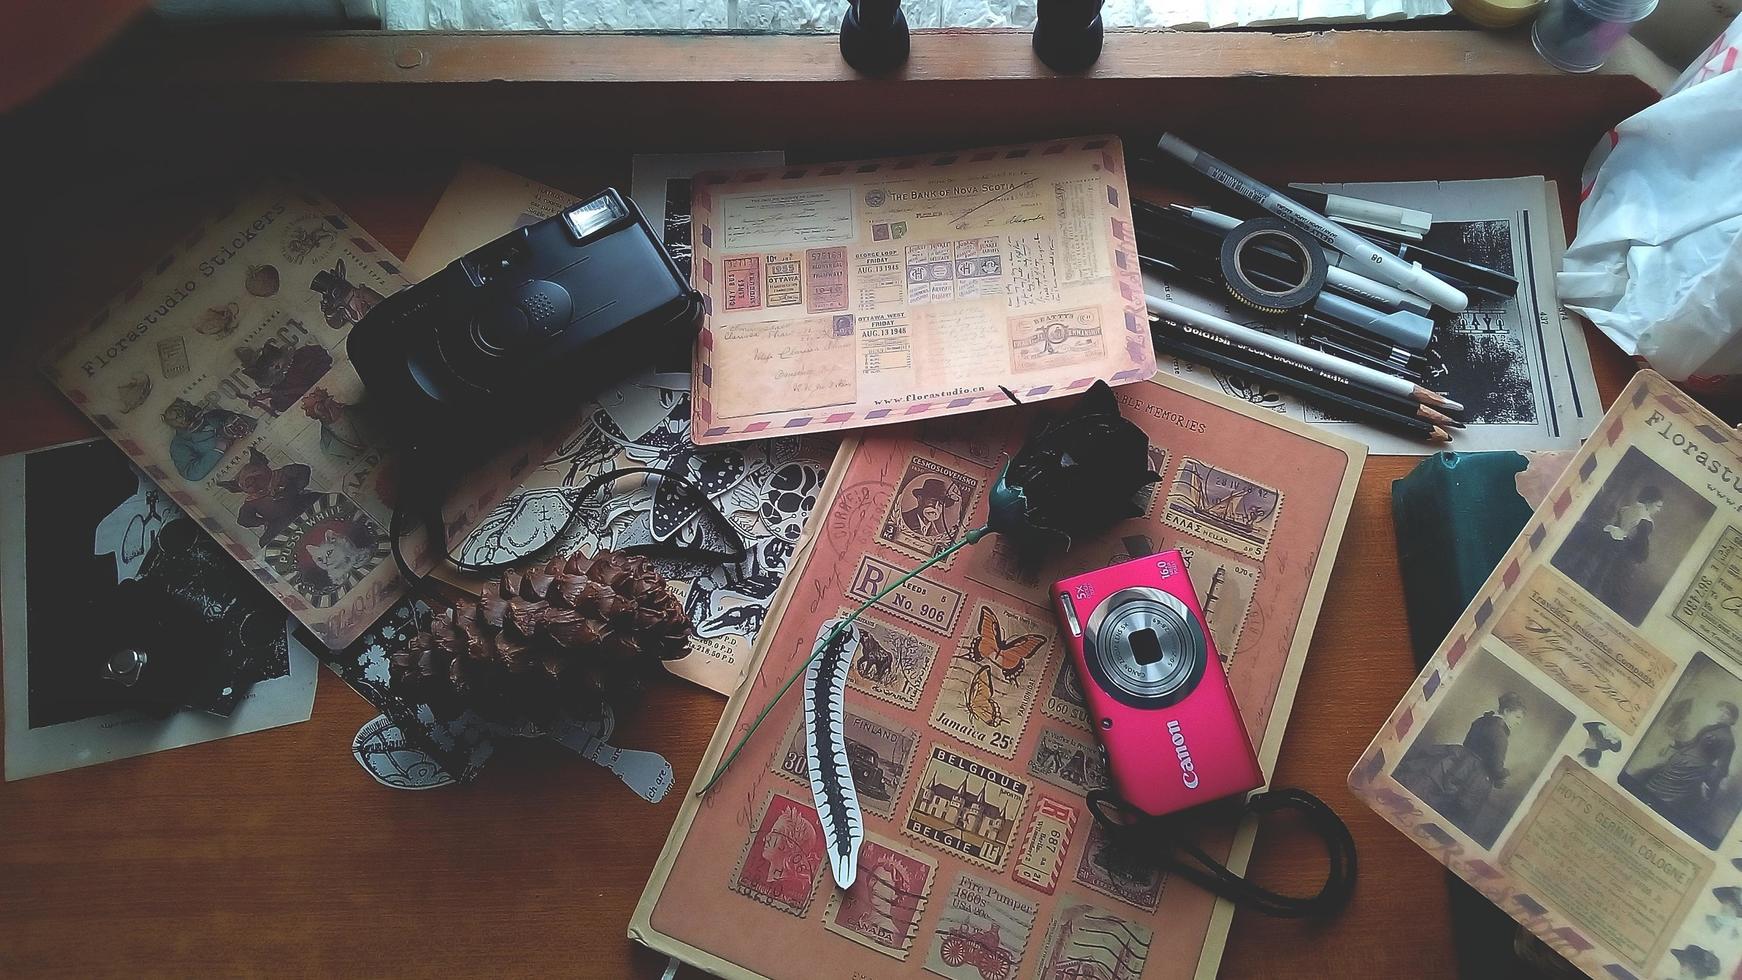 cadre de bureau vintage avec vieux livres et machine à écrire photo